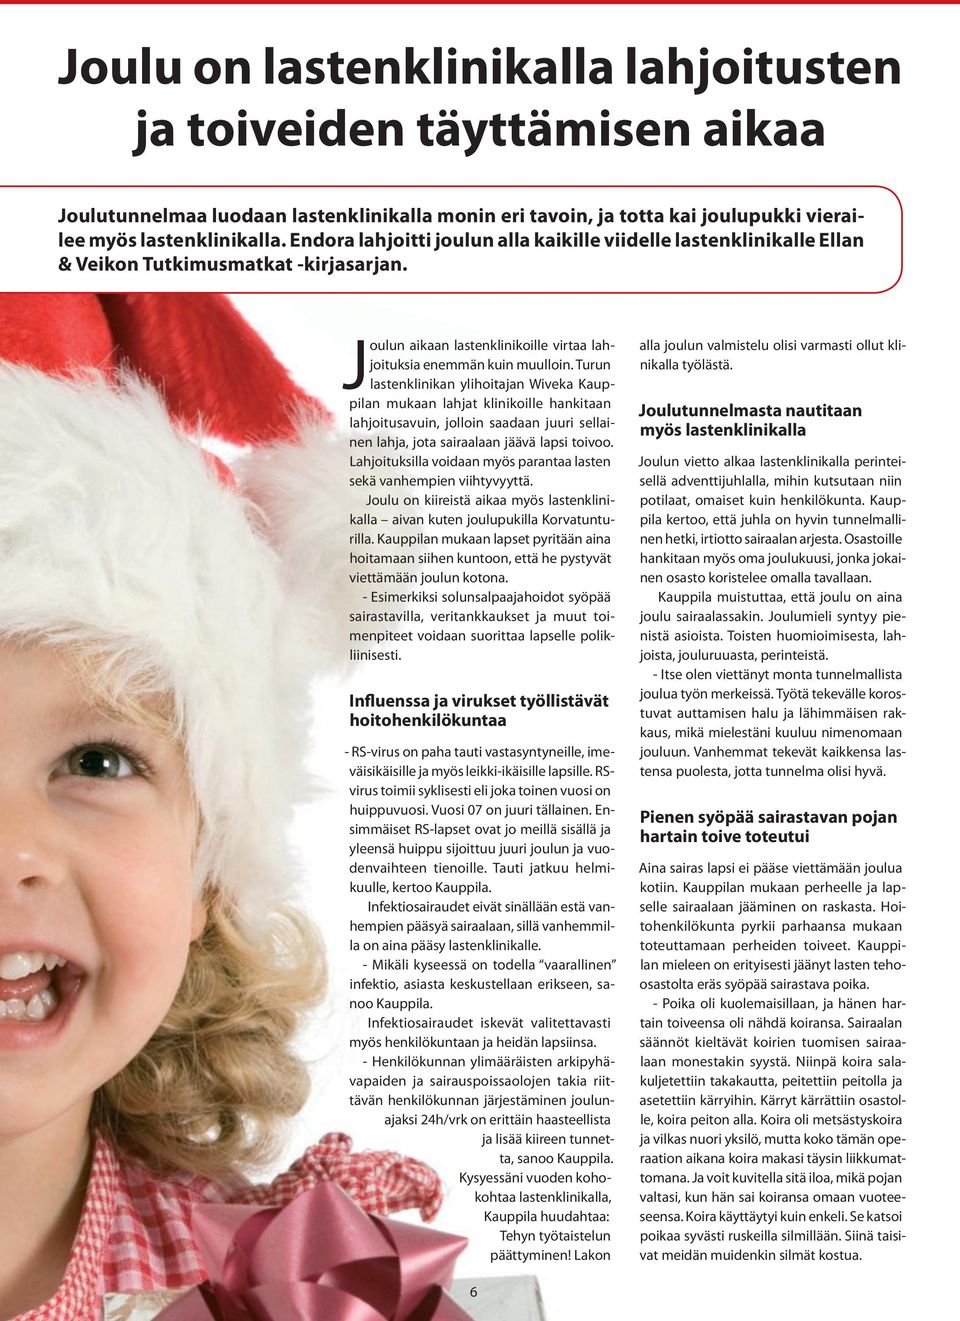 Turun lastenklinikan ylihoitajan Wiveka Kauppilan mukaan lahjat klinikoille hankitaan lahjoitusavuin, jolloin saadaan juuri sellainen lahja, jota sairaalaan jäävä lapsi toivoo.